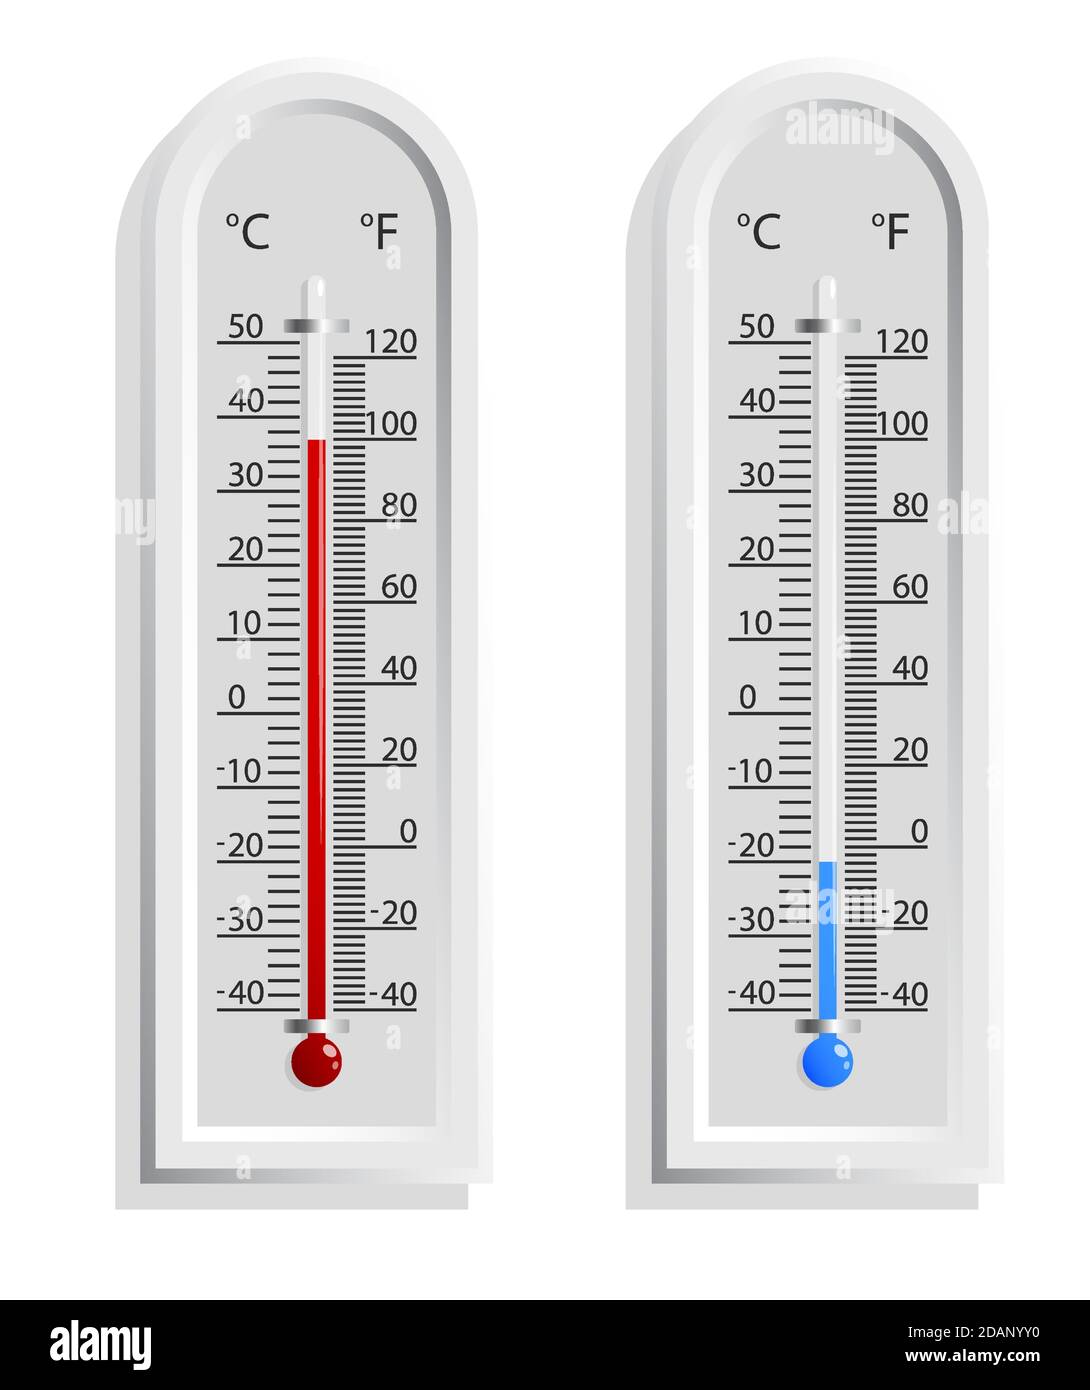 Realistisches Wetterthermometer mit hoher und niedriger Temperatur. Messung  der Außentemperatur. Isolierter Vektor auf weißem Hintergrund  Stock-Vektorgrafik - Alamy